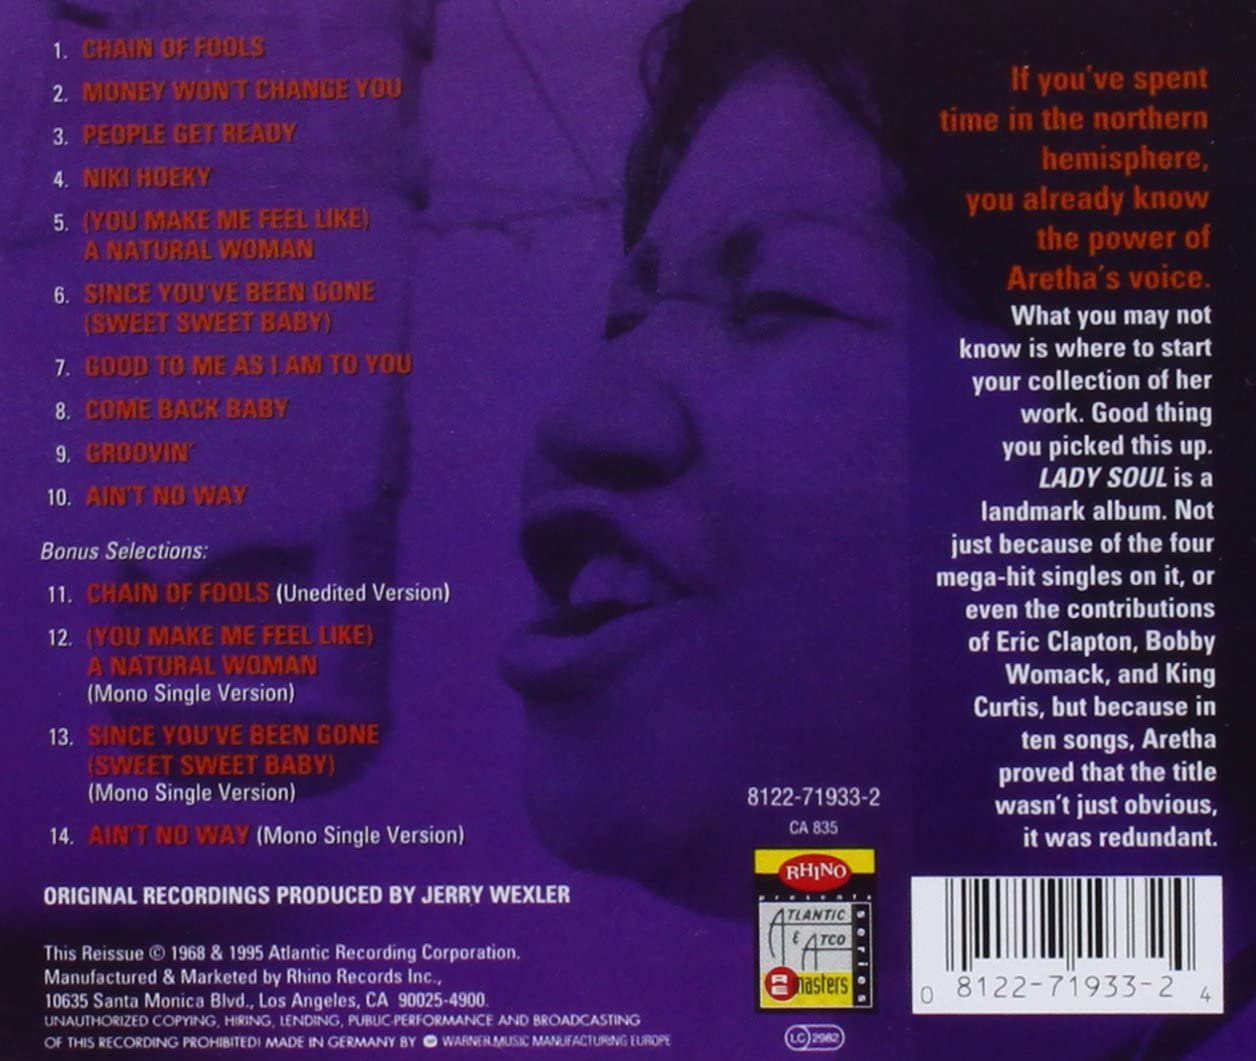 Lady Soul | Aretha Franklin image1